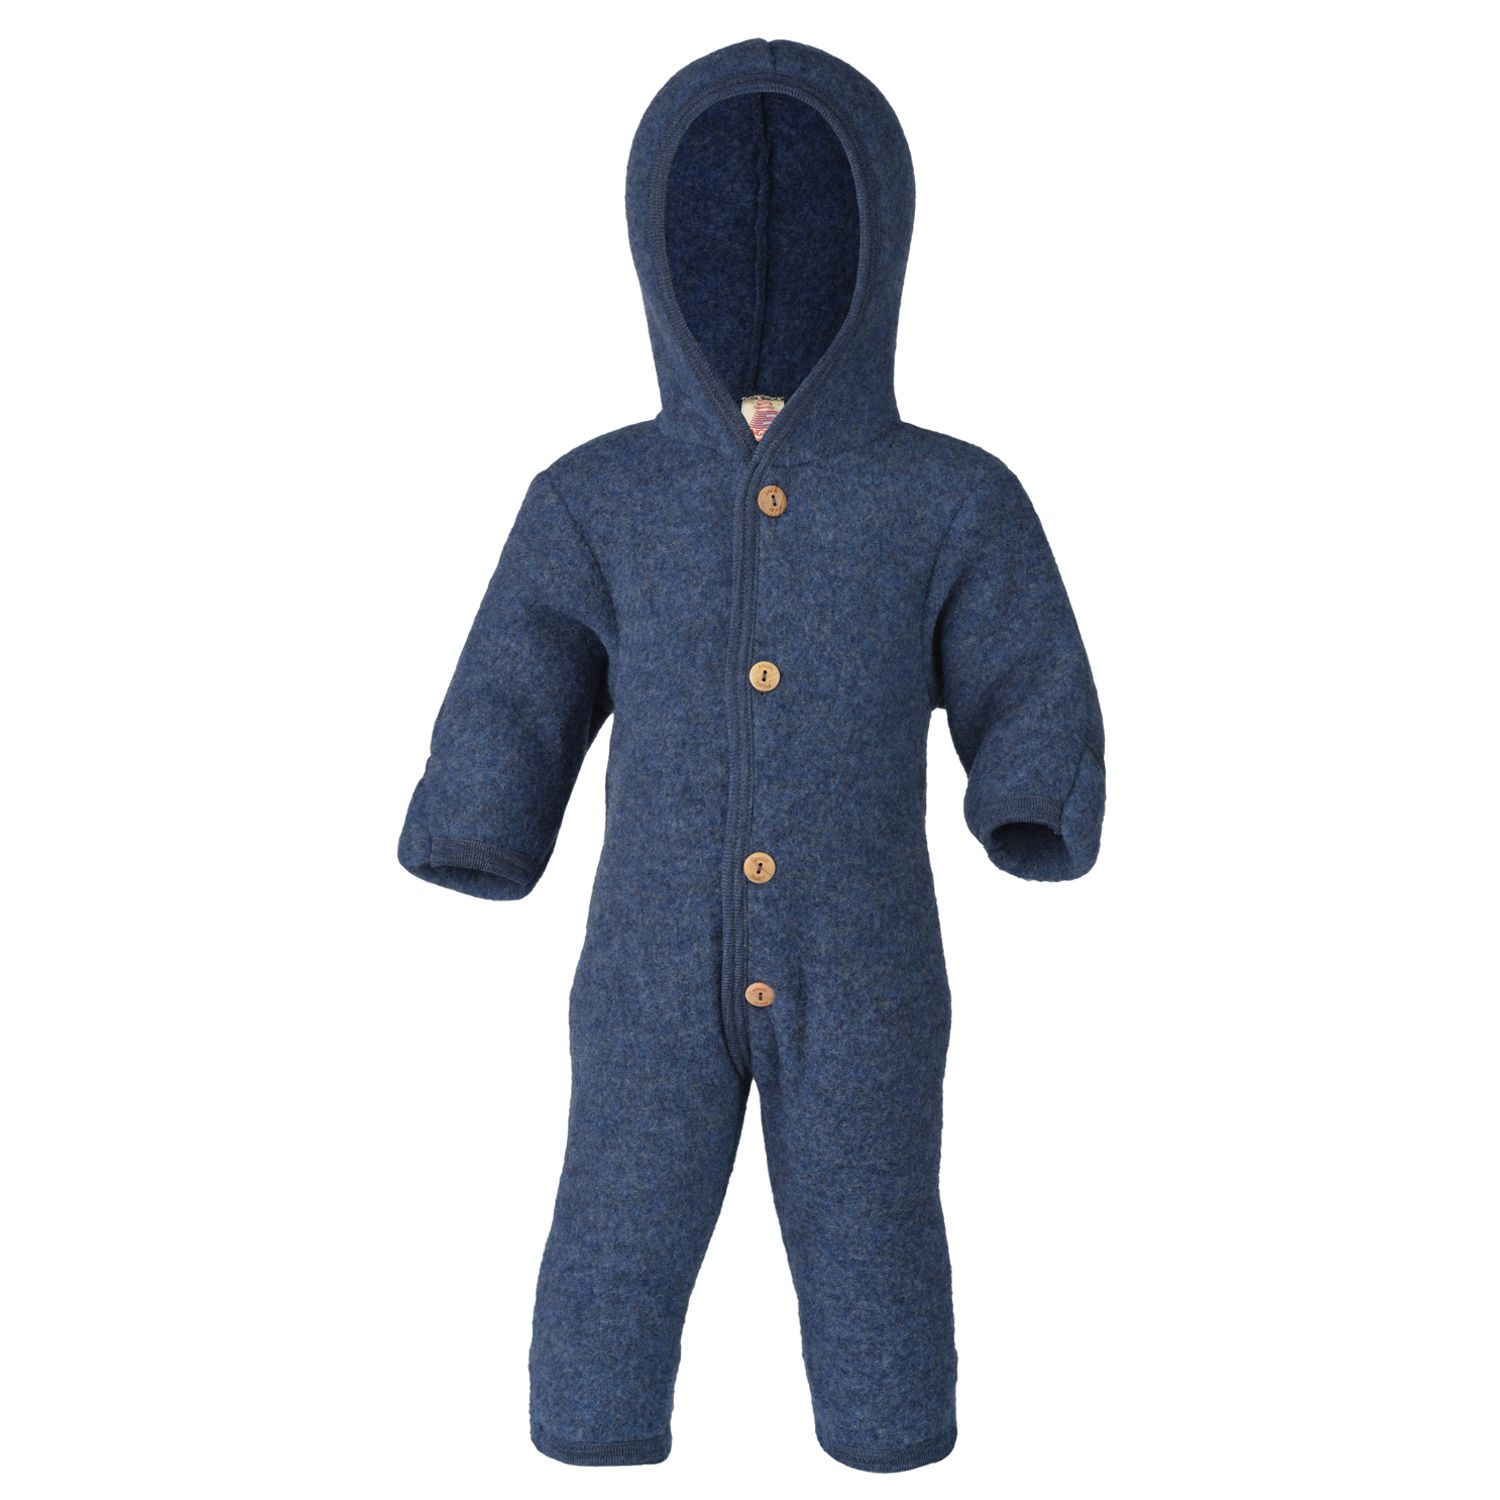 ENGEL Baby Overall Wolle mit Umschlag blau